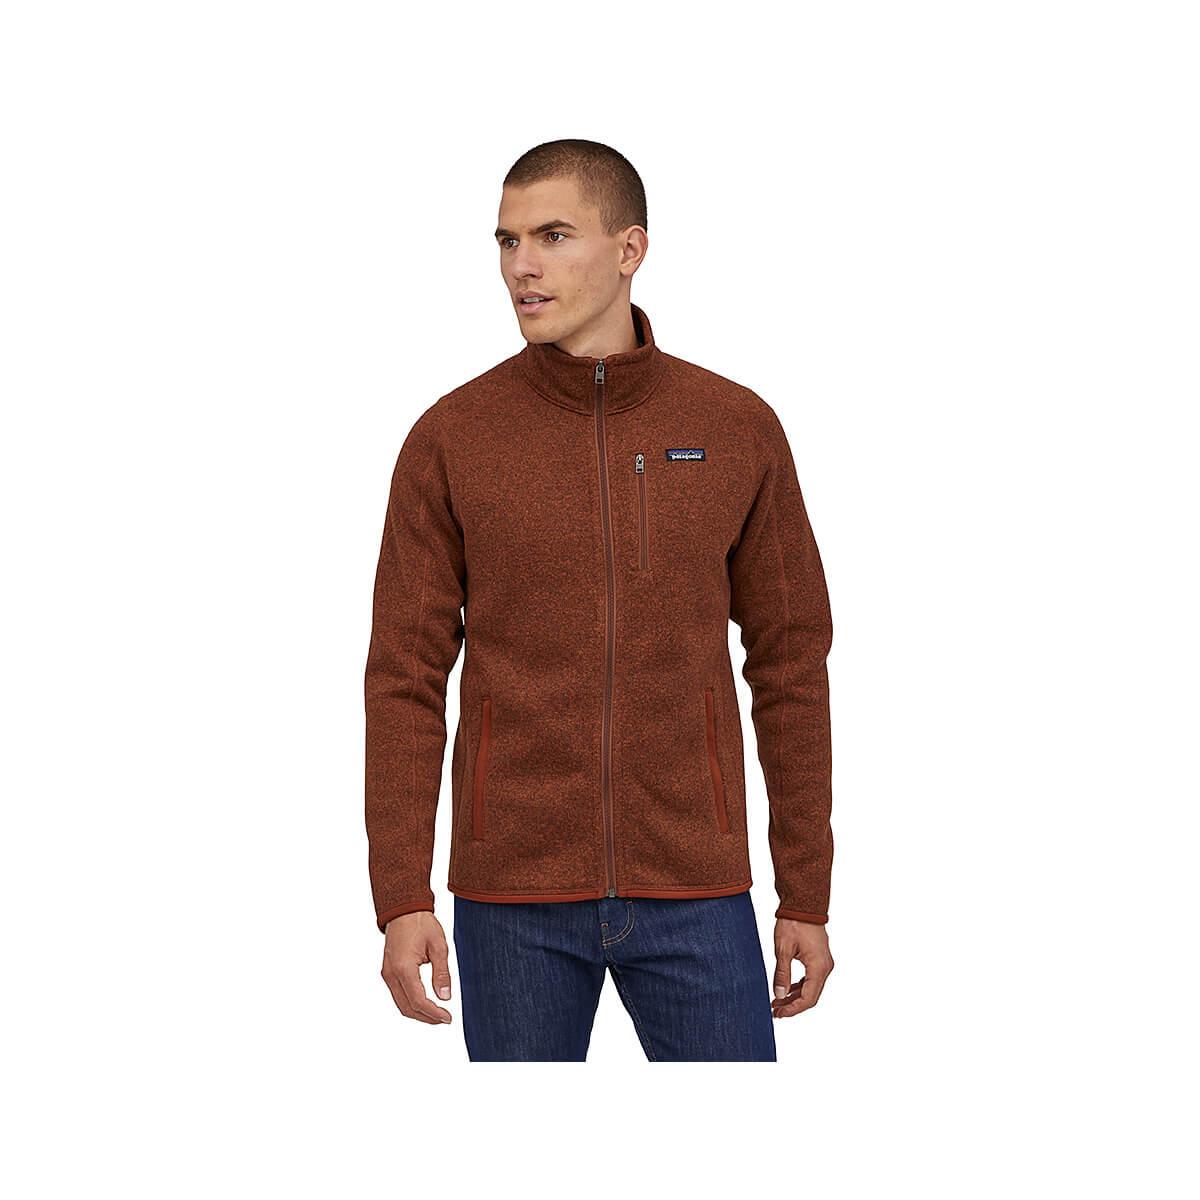 Mast General Store  Men's Better Sweater Fleece Jacket